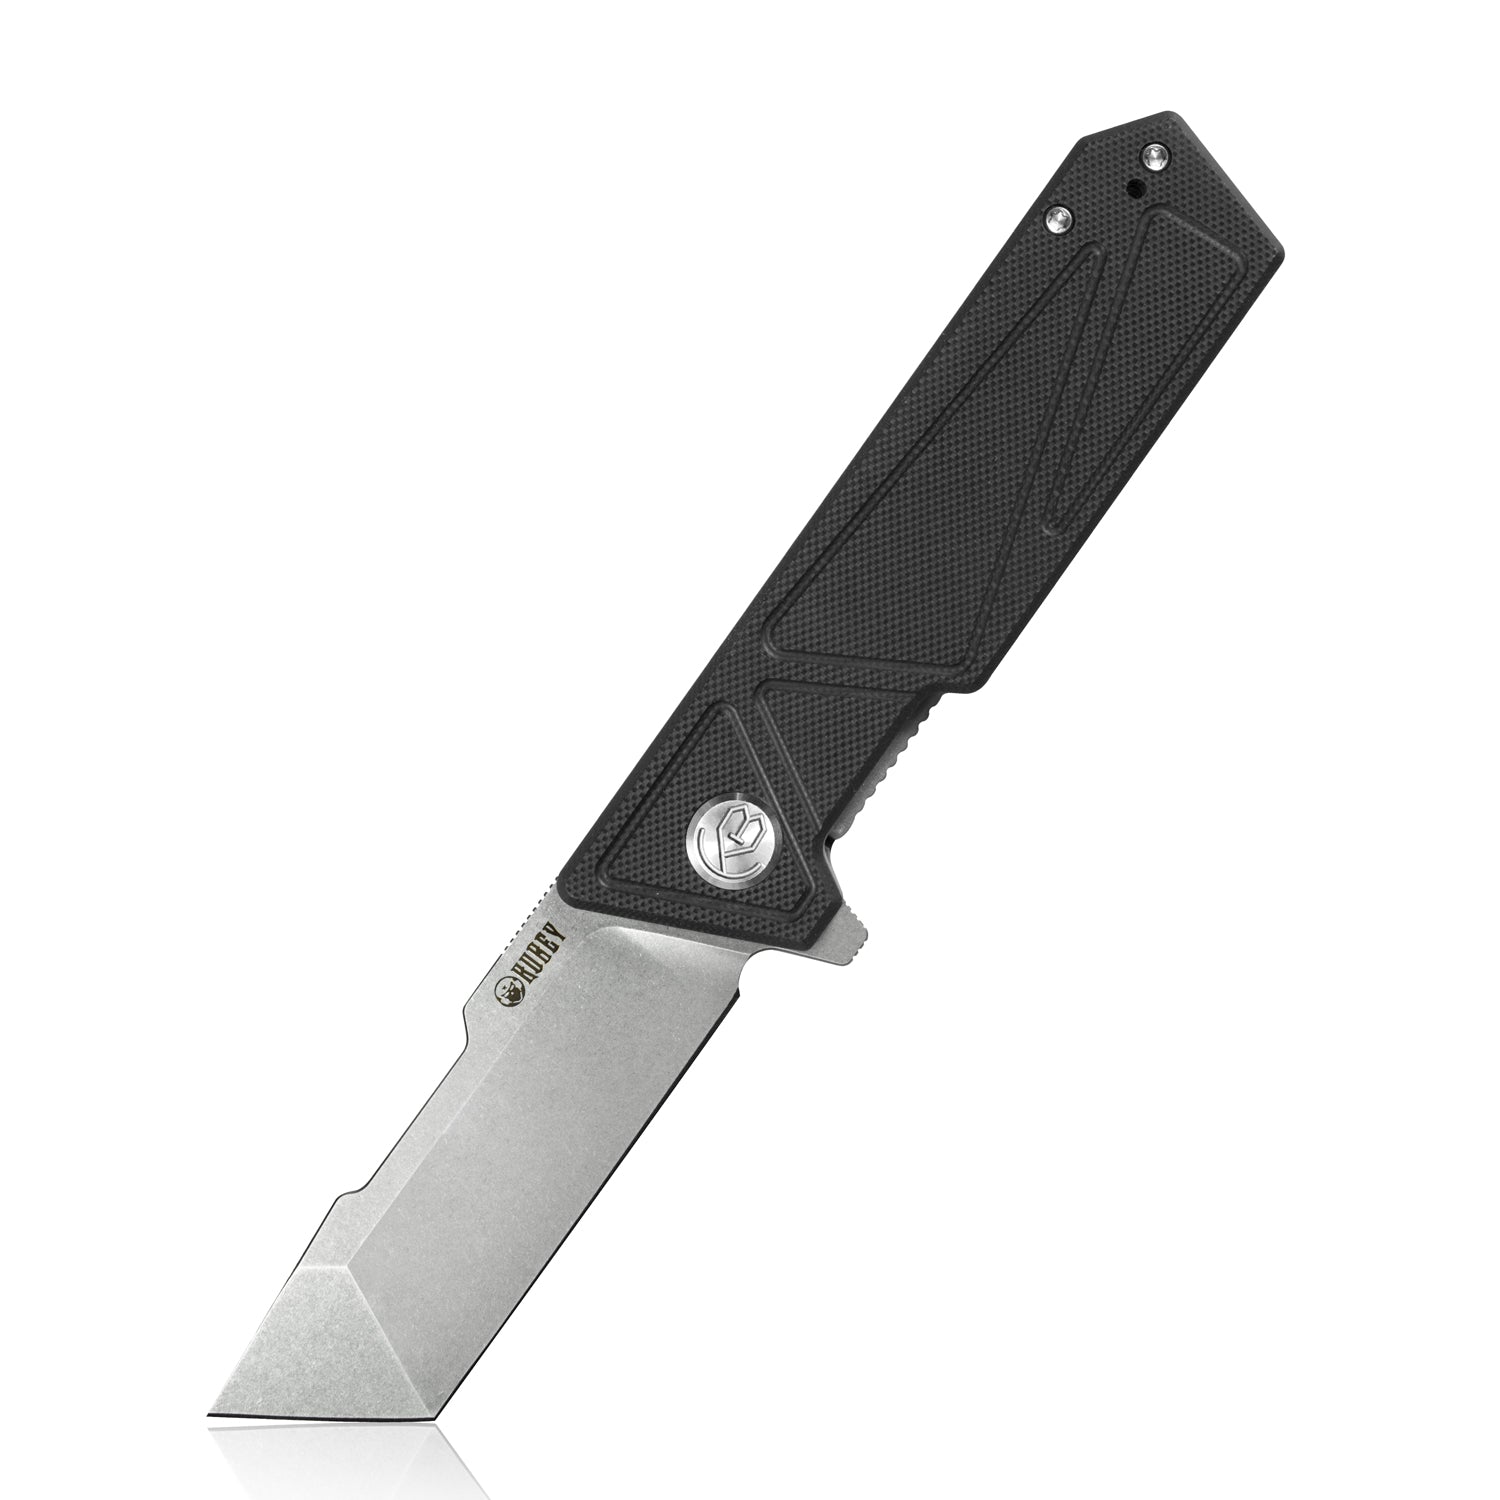 Kubey Avenger Outdoor Edc Folding Pocket Knife Black G10 Handle 3.07" Bead Blasted D2 KU104A